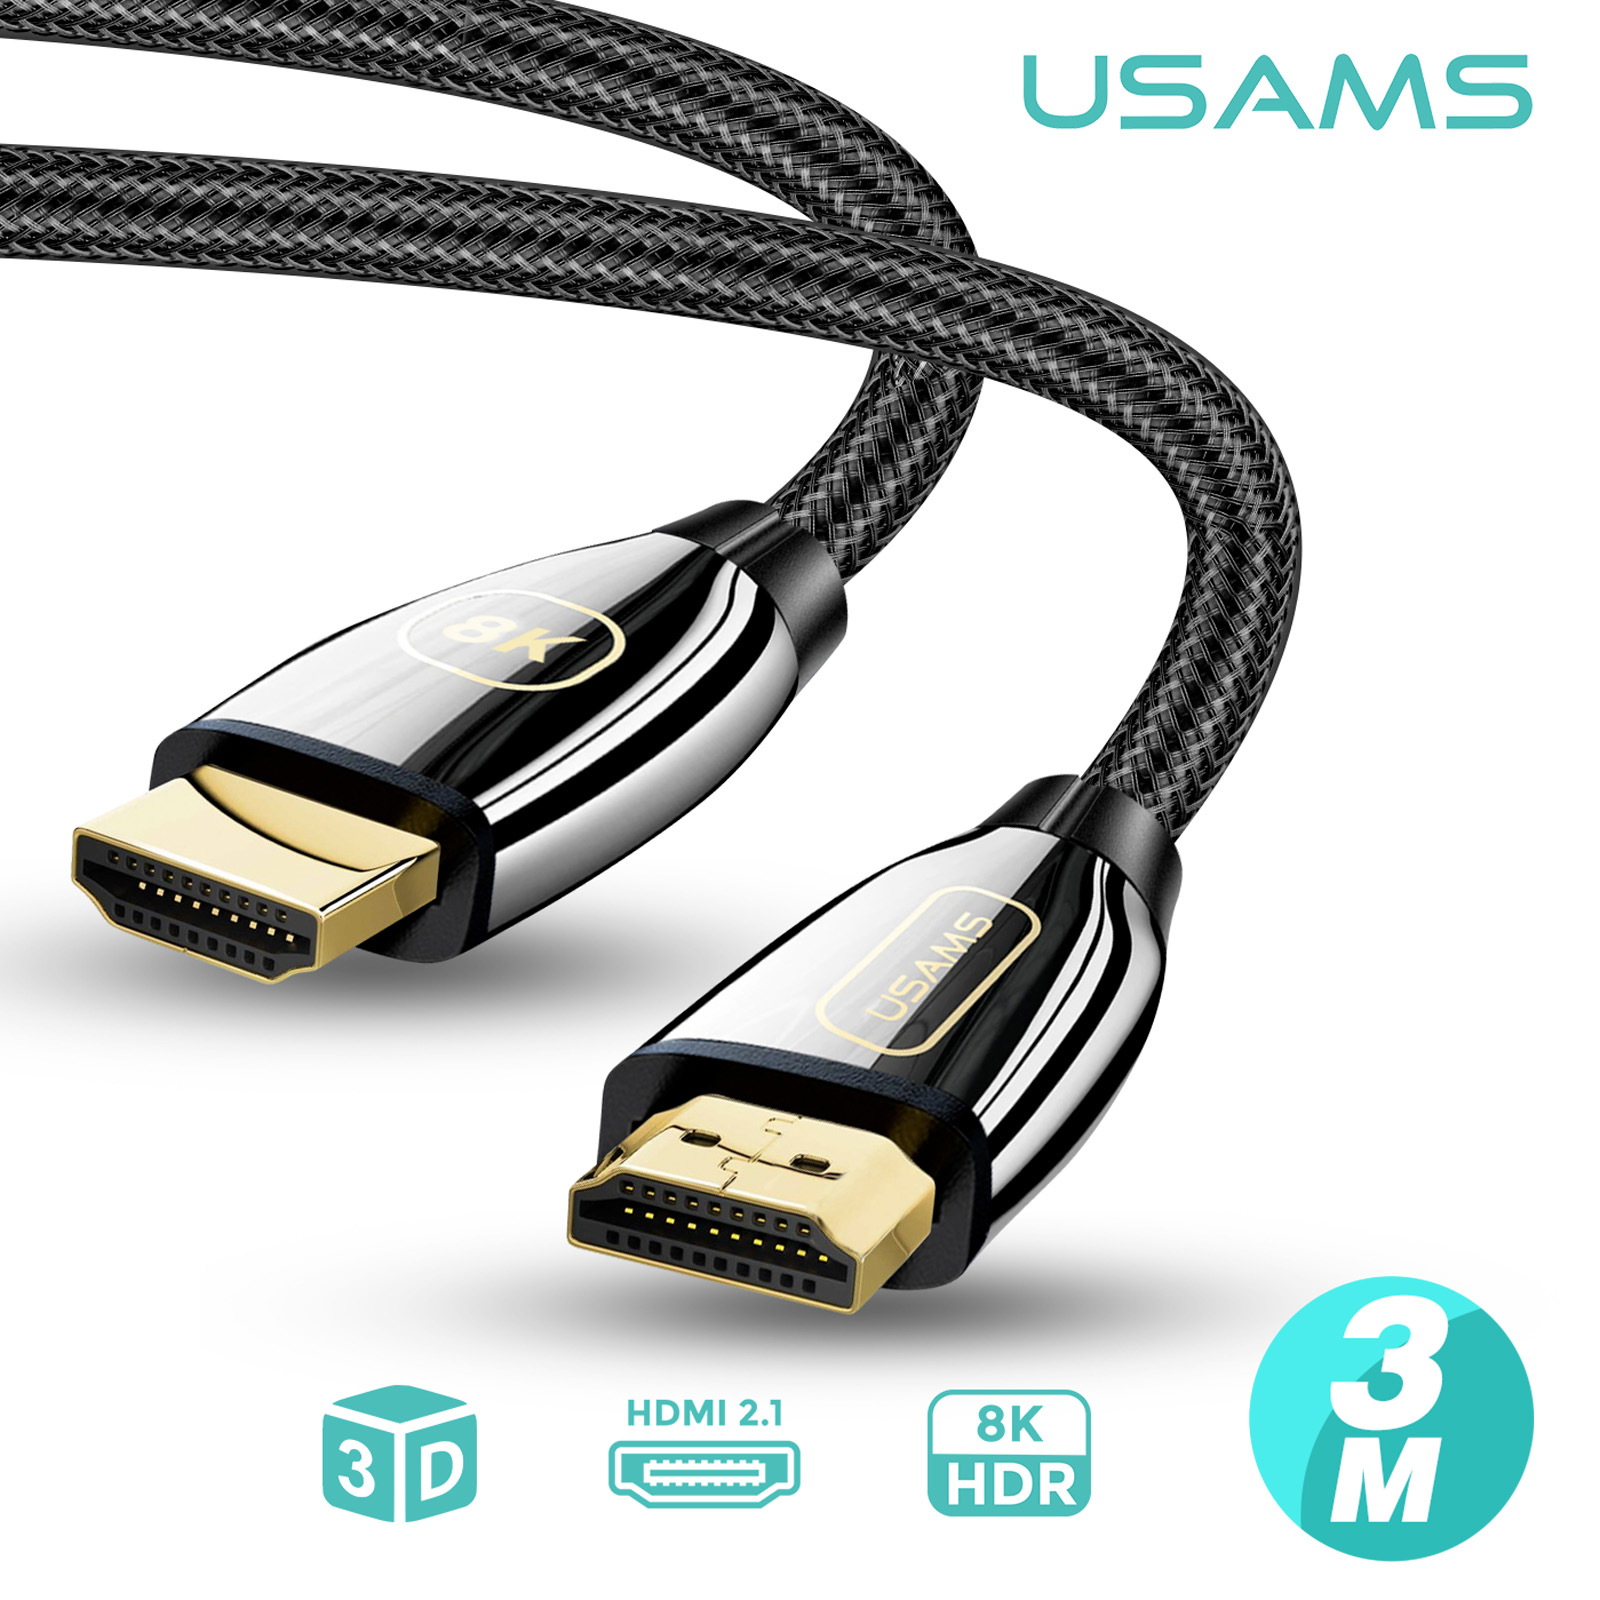 Câble HDMI 2.1, Ultra HD 8K, Tressé Résistant, Noir, 3 mètres - Usams -  Français